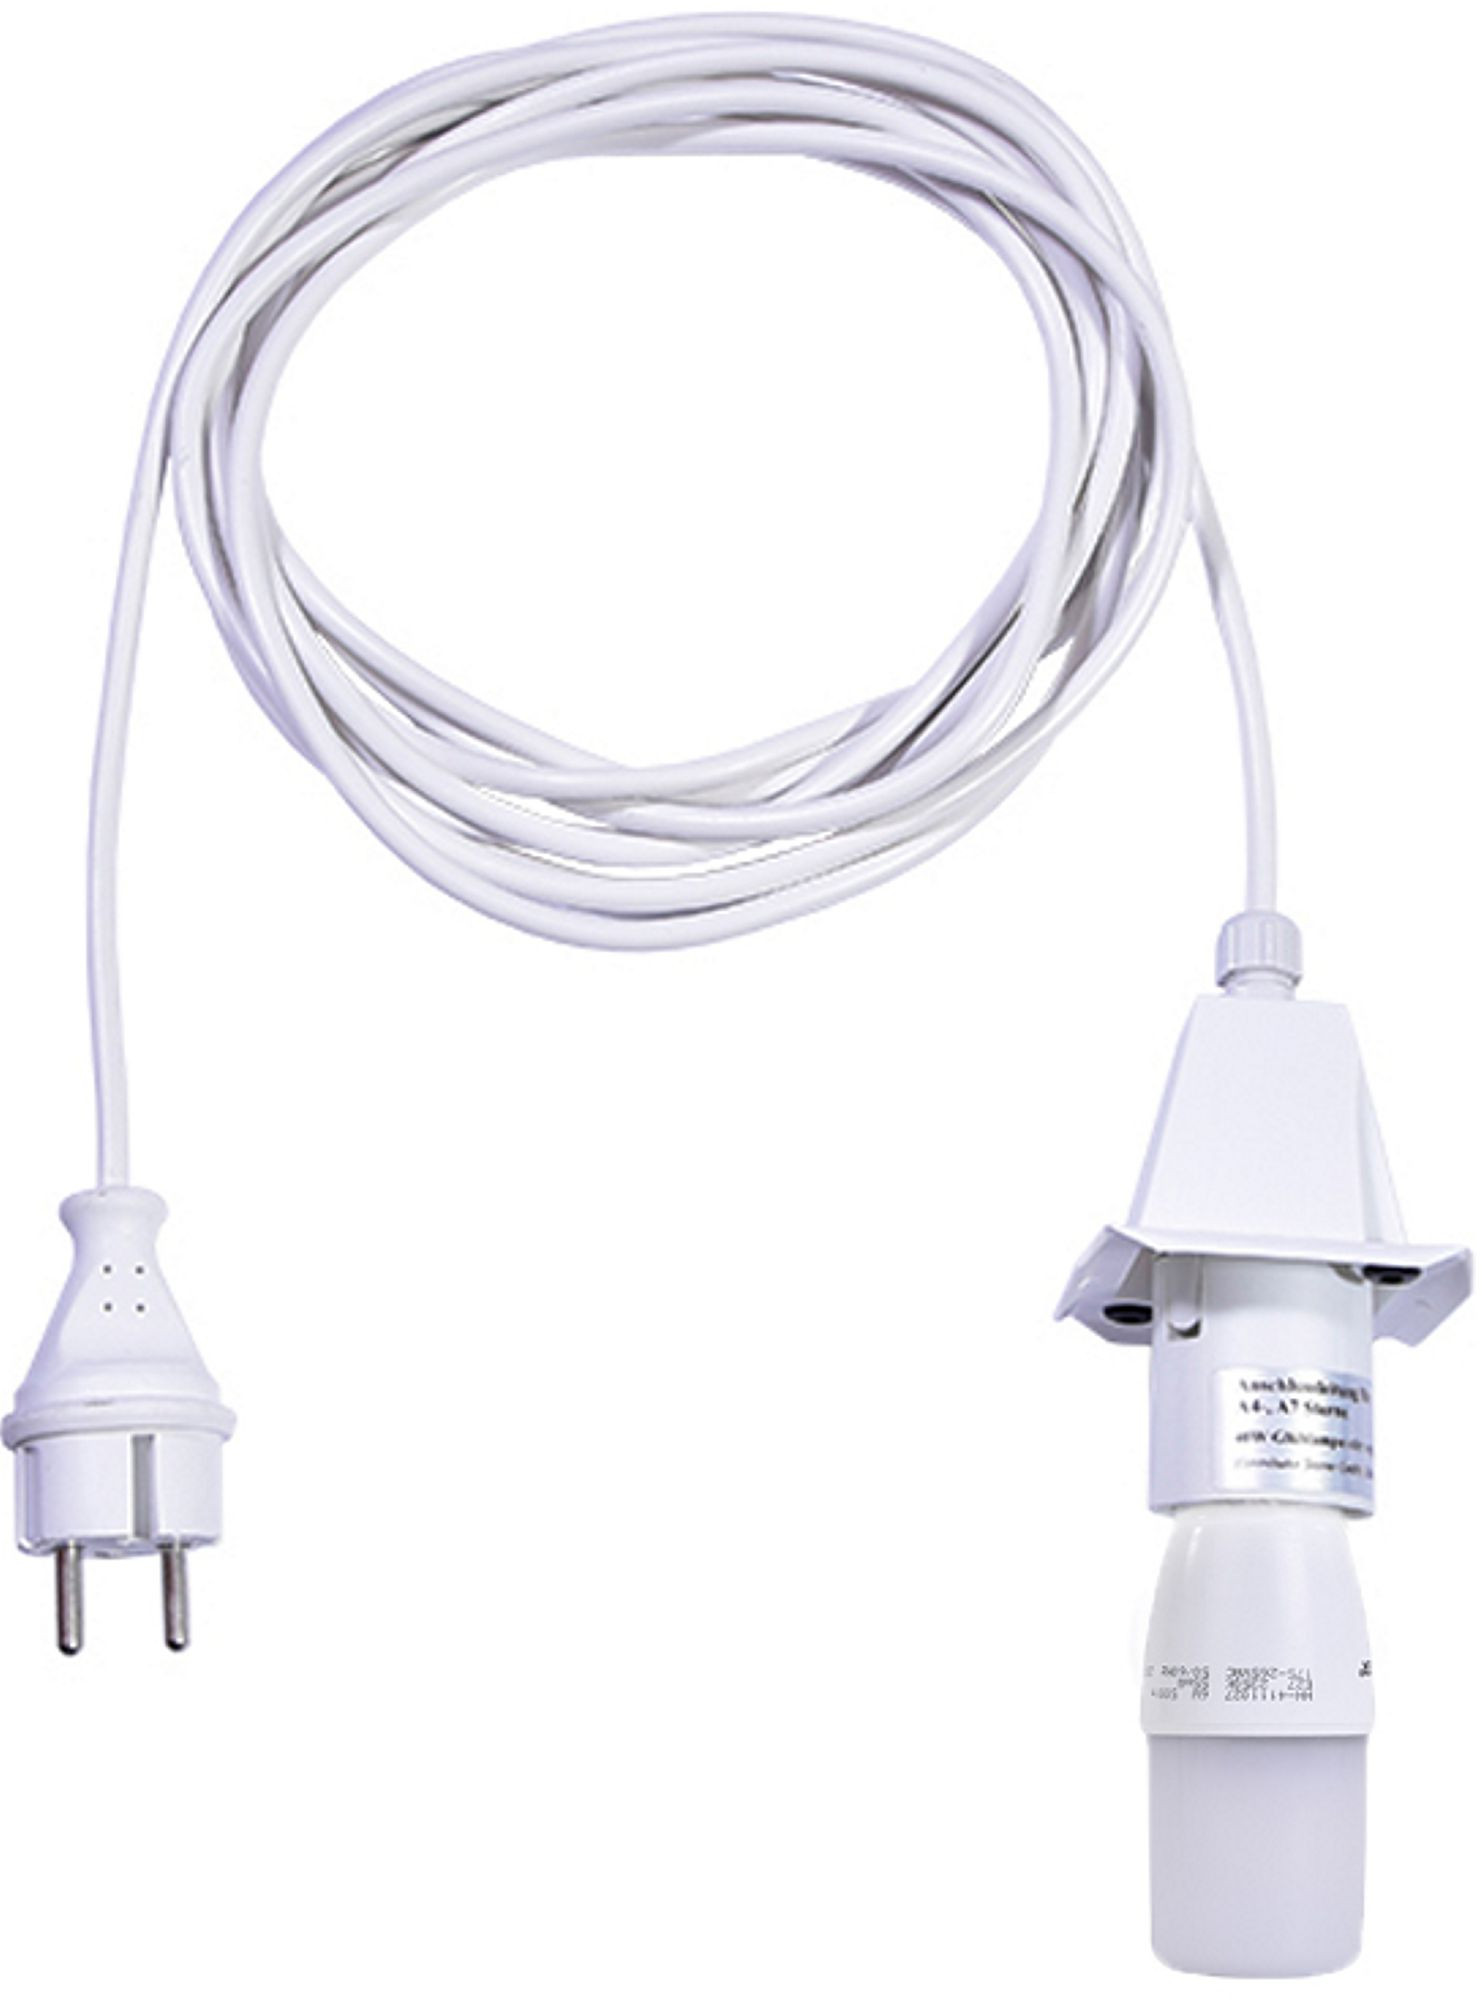 Herrnhuter Kabel für A4/A7 - weißes Kabel 5m weiß